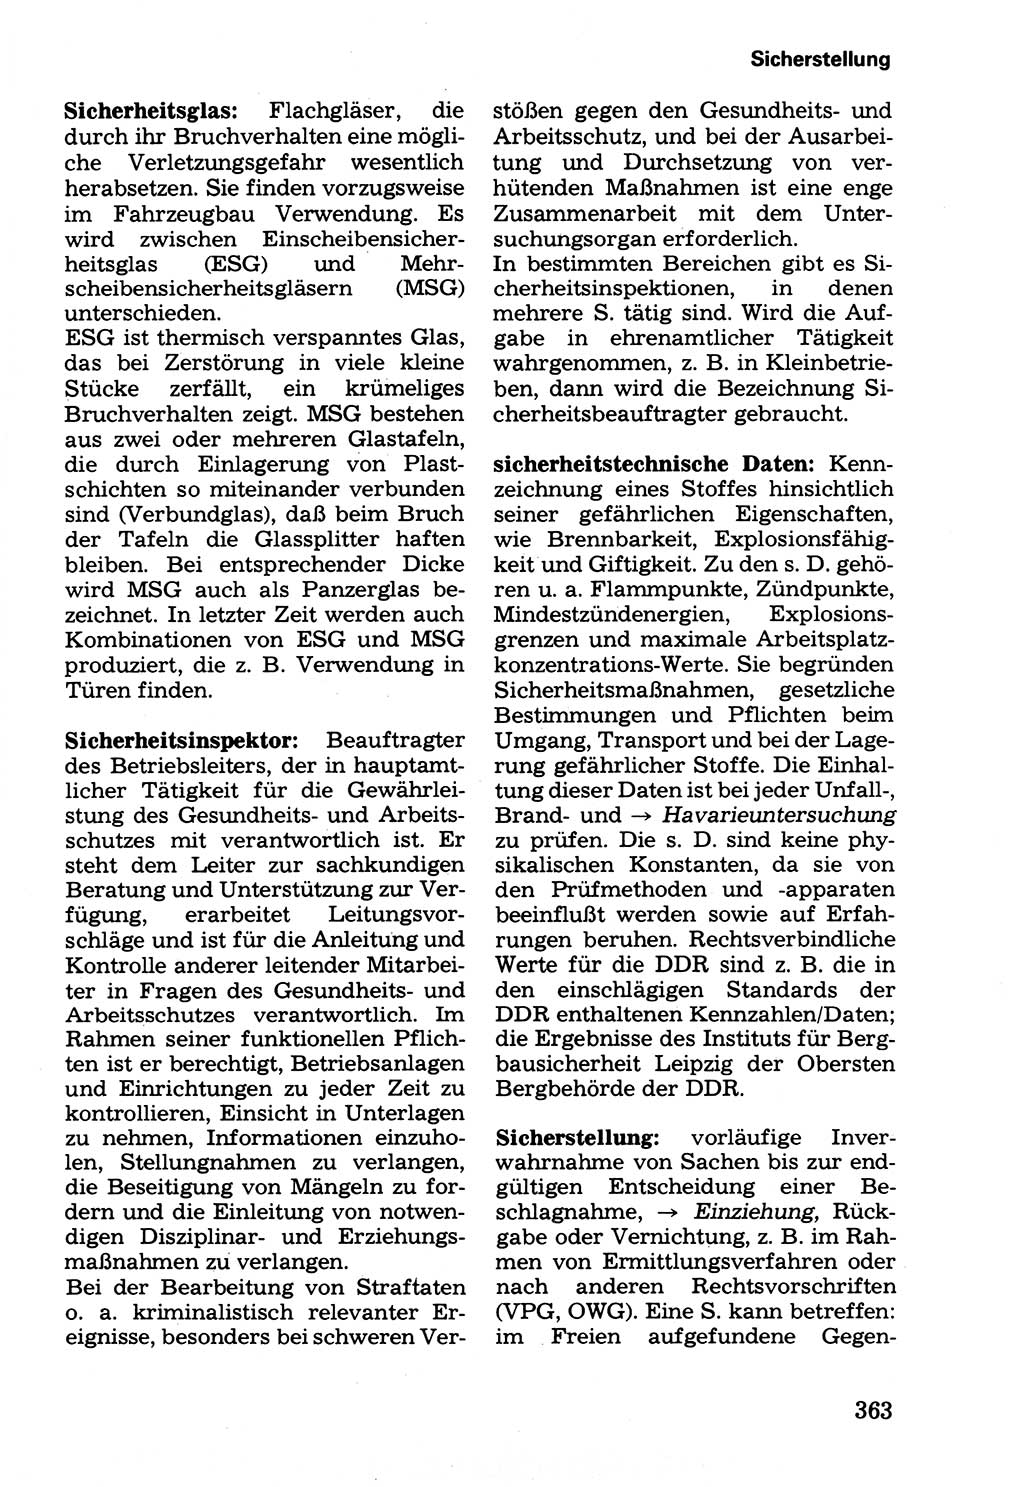 Wörterbuch der sozialistischen Kriminalistik [Deutsche Demokratische Republik (DDR)] 1981, Seite 363 (Wb. soz. Krim. DDR 1981, S. 363)